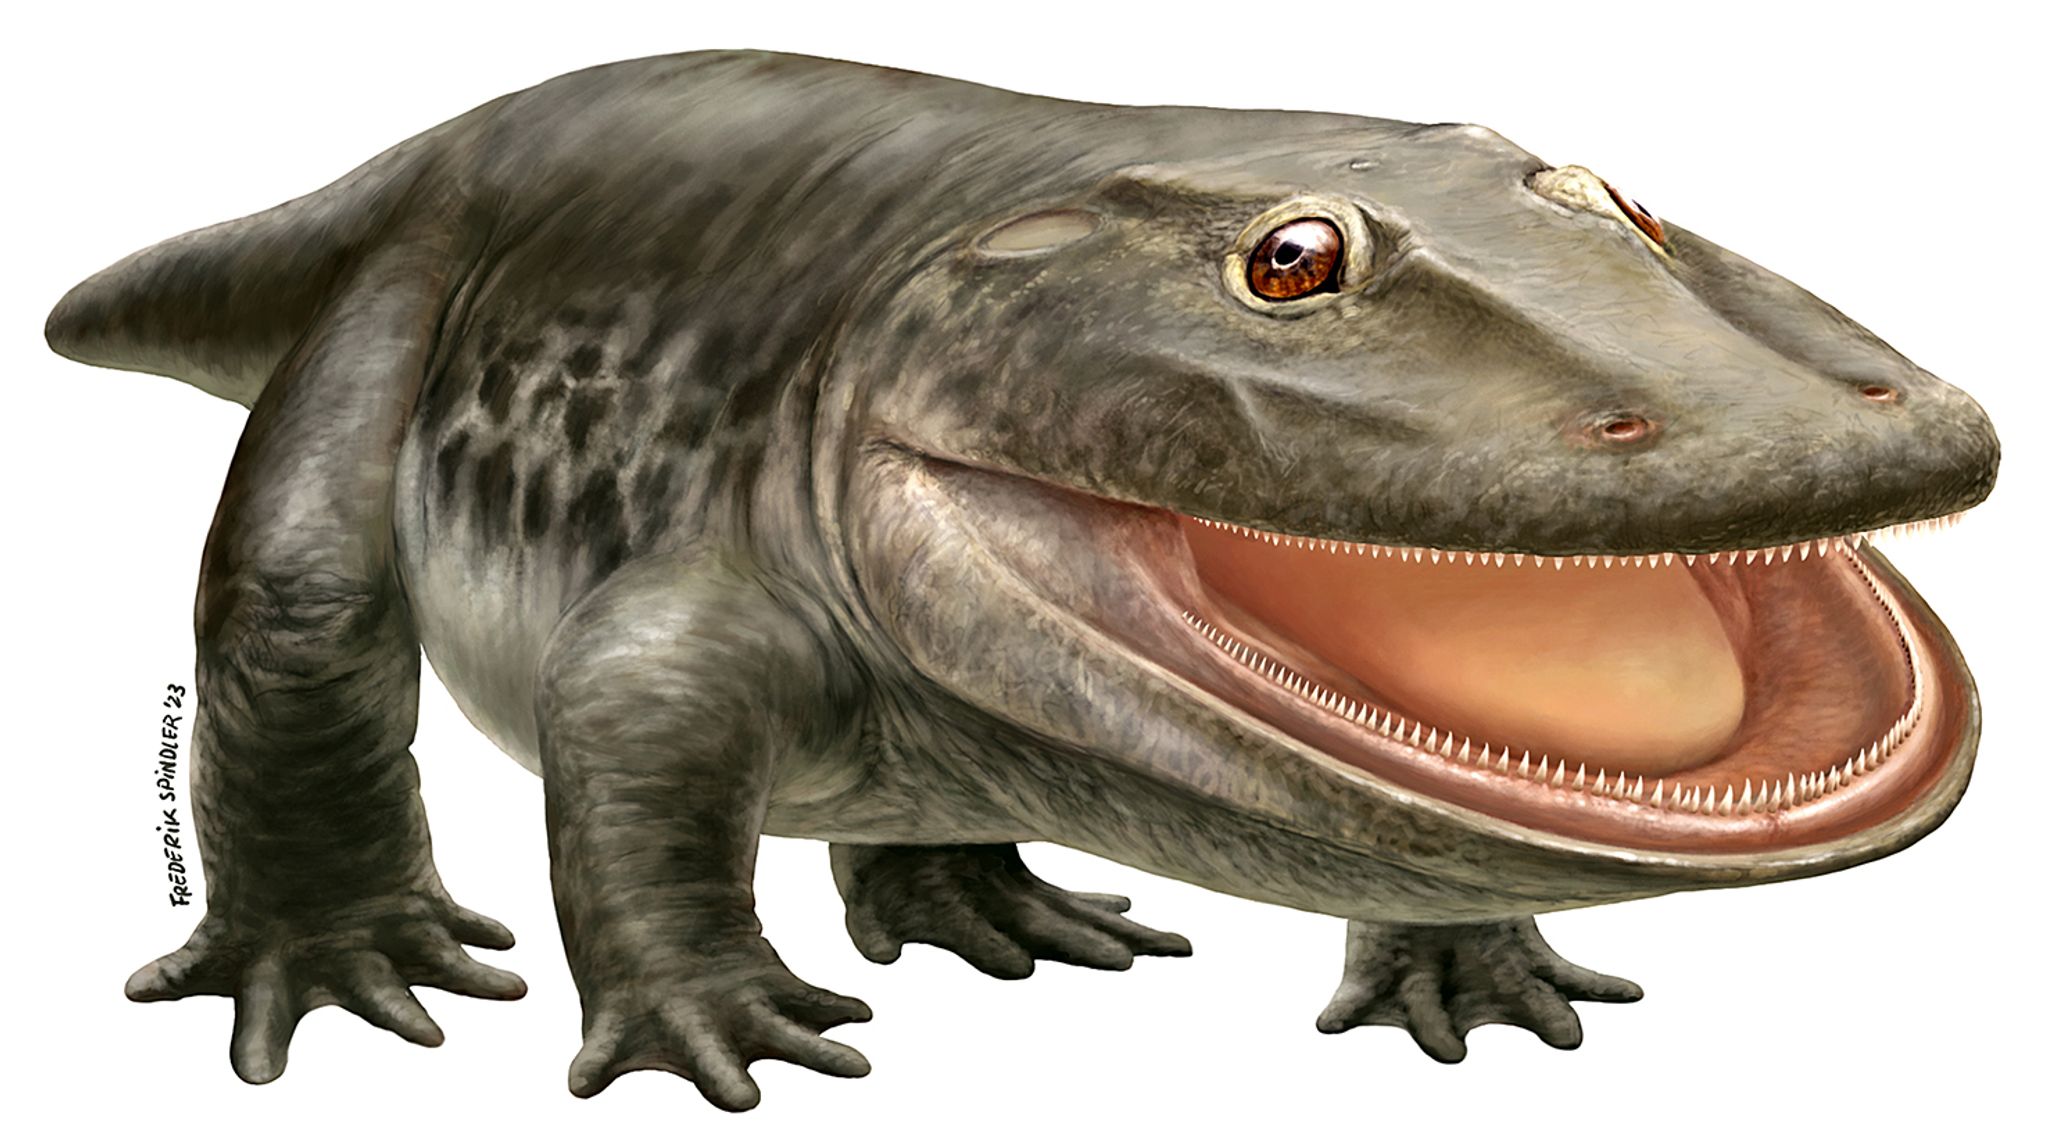 Der Ursaurier mit der Fachbezeichnung Stenokranio boldi. Der Name bedeutet laut Museum in etwa: Schmalschädler.